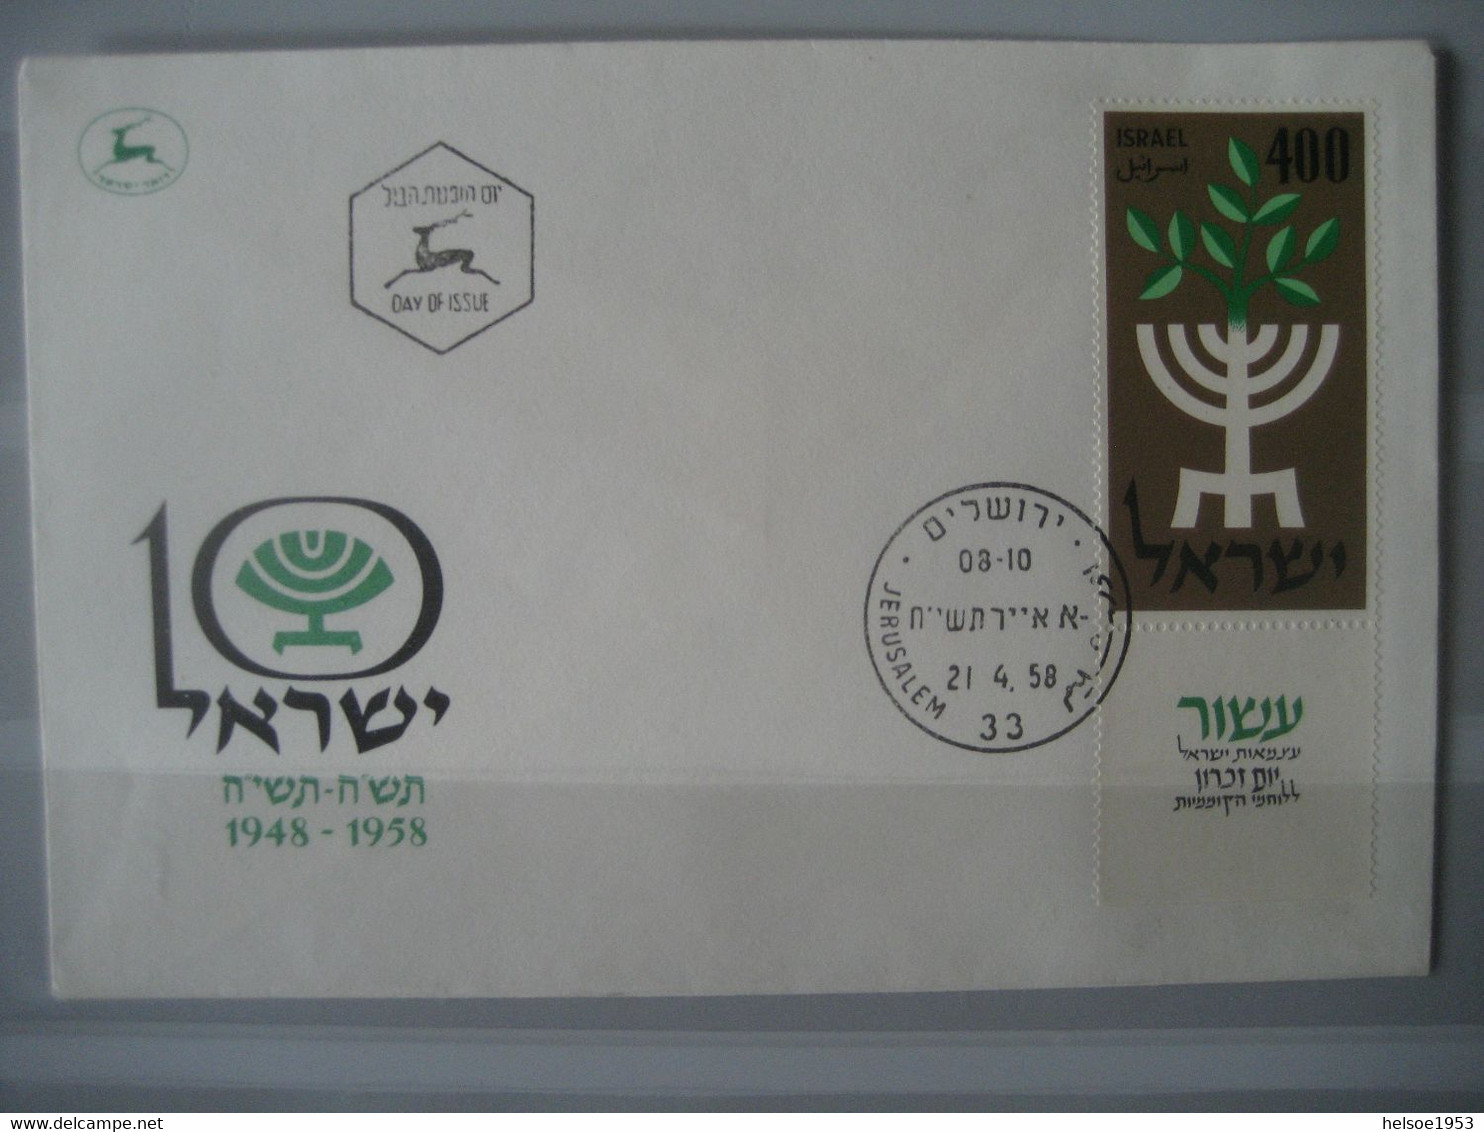 Israel- Sammlung von Briefmarken, Briefe, Karten, Blocks, Kleinbogen, Beschreibungen, Fotos im Safe Album